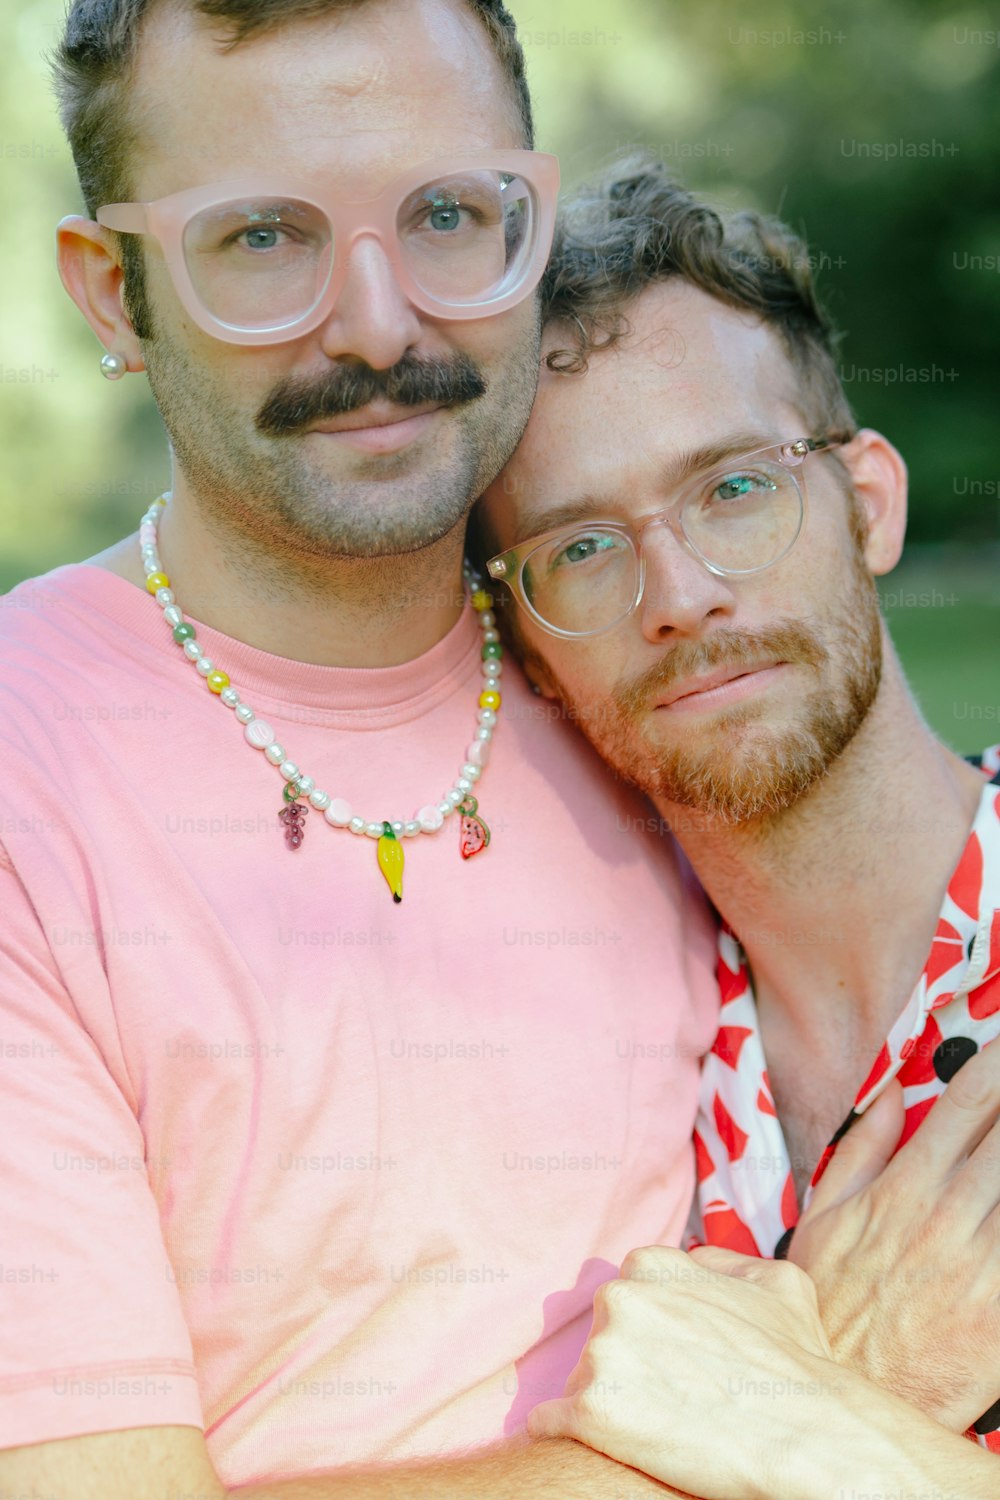 Ein Mann mit Schnurrbart und Brille, der einen anderen Mann umarmt